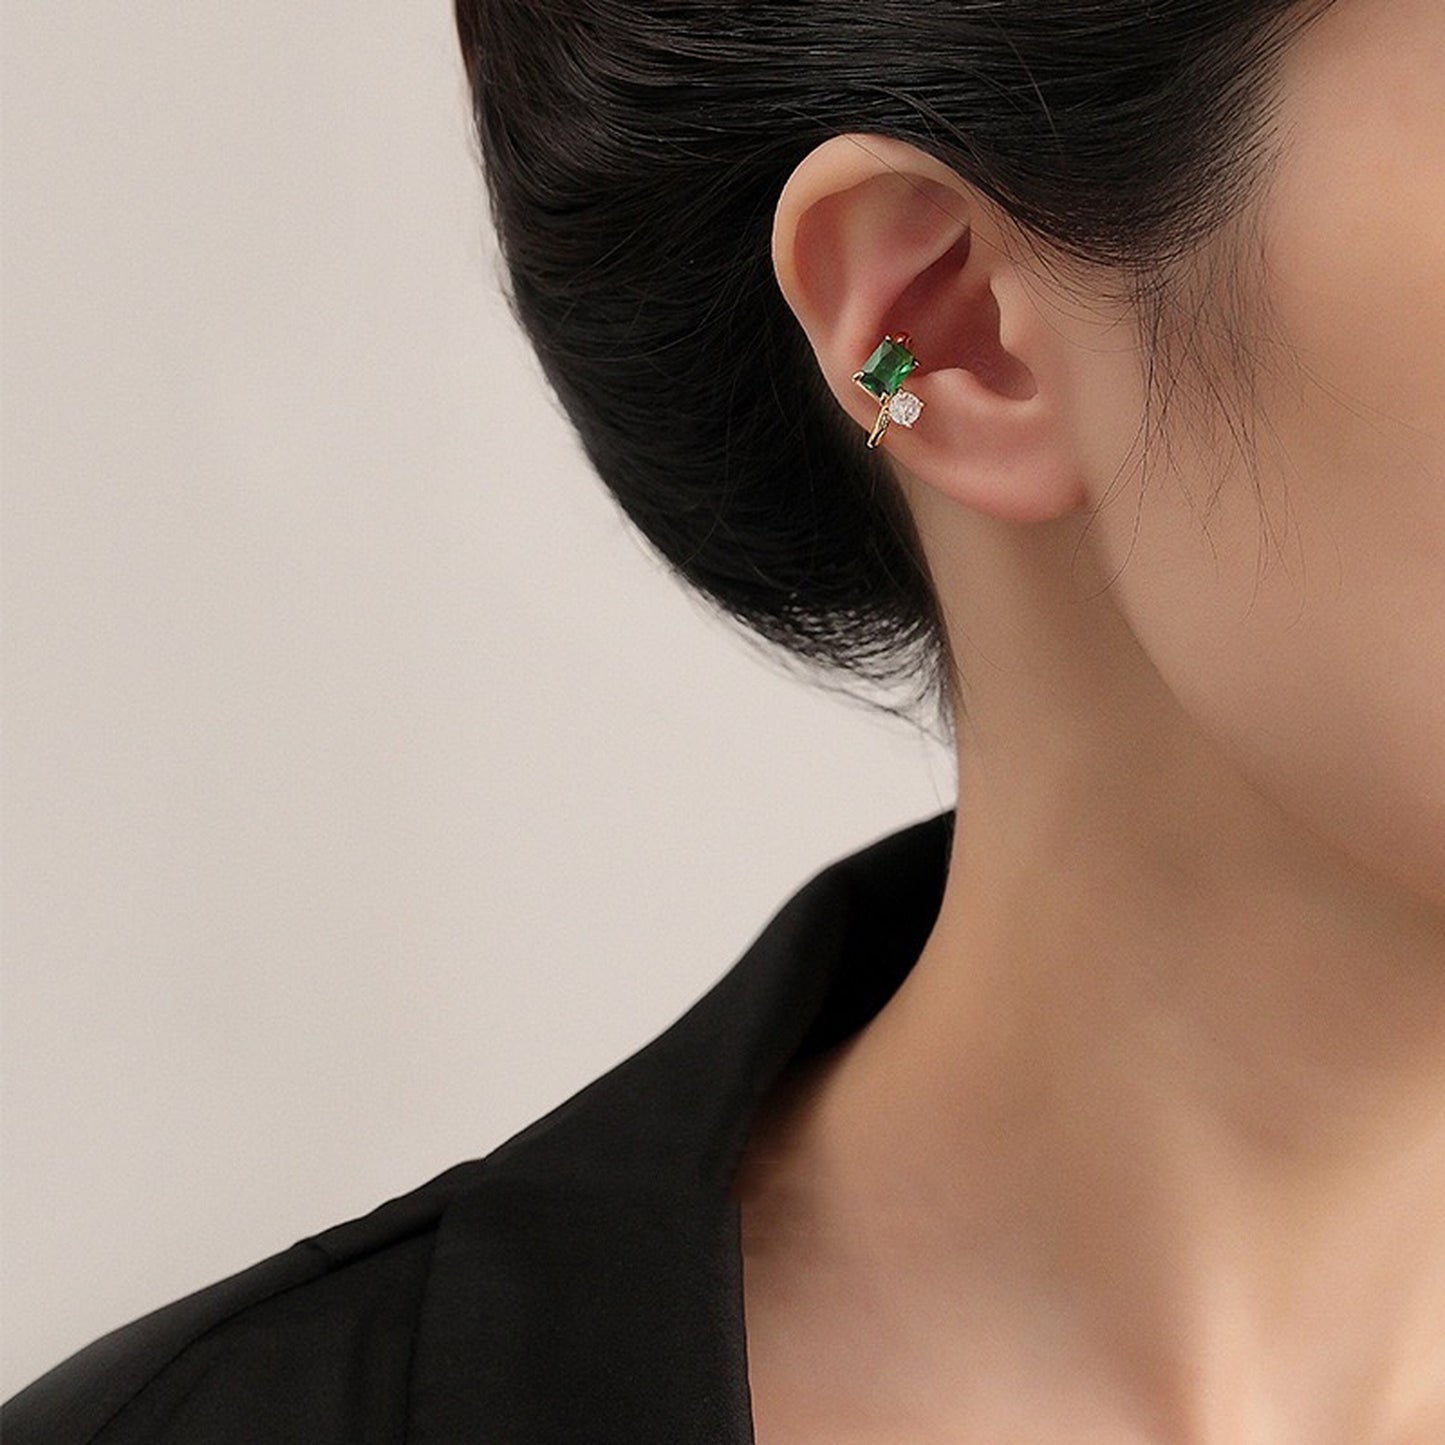 Emerald Ear Cuff Climber, Emerald Green Gold Silver Earrings, Non Pierced Clip-on Earrings, Helix Ear Bone Jewelry, Everyday Simple Earrings